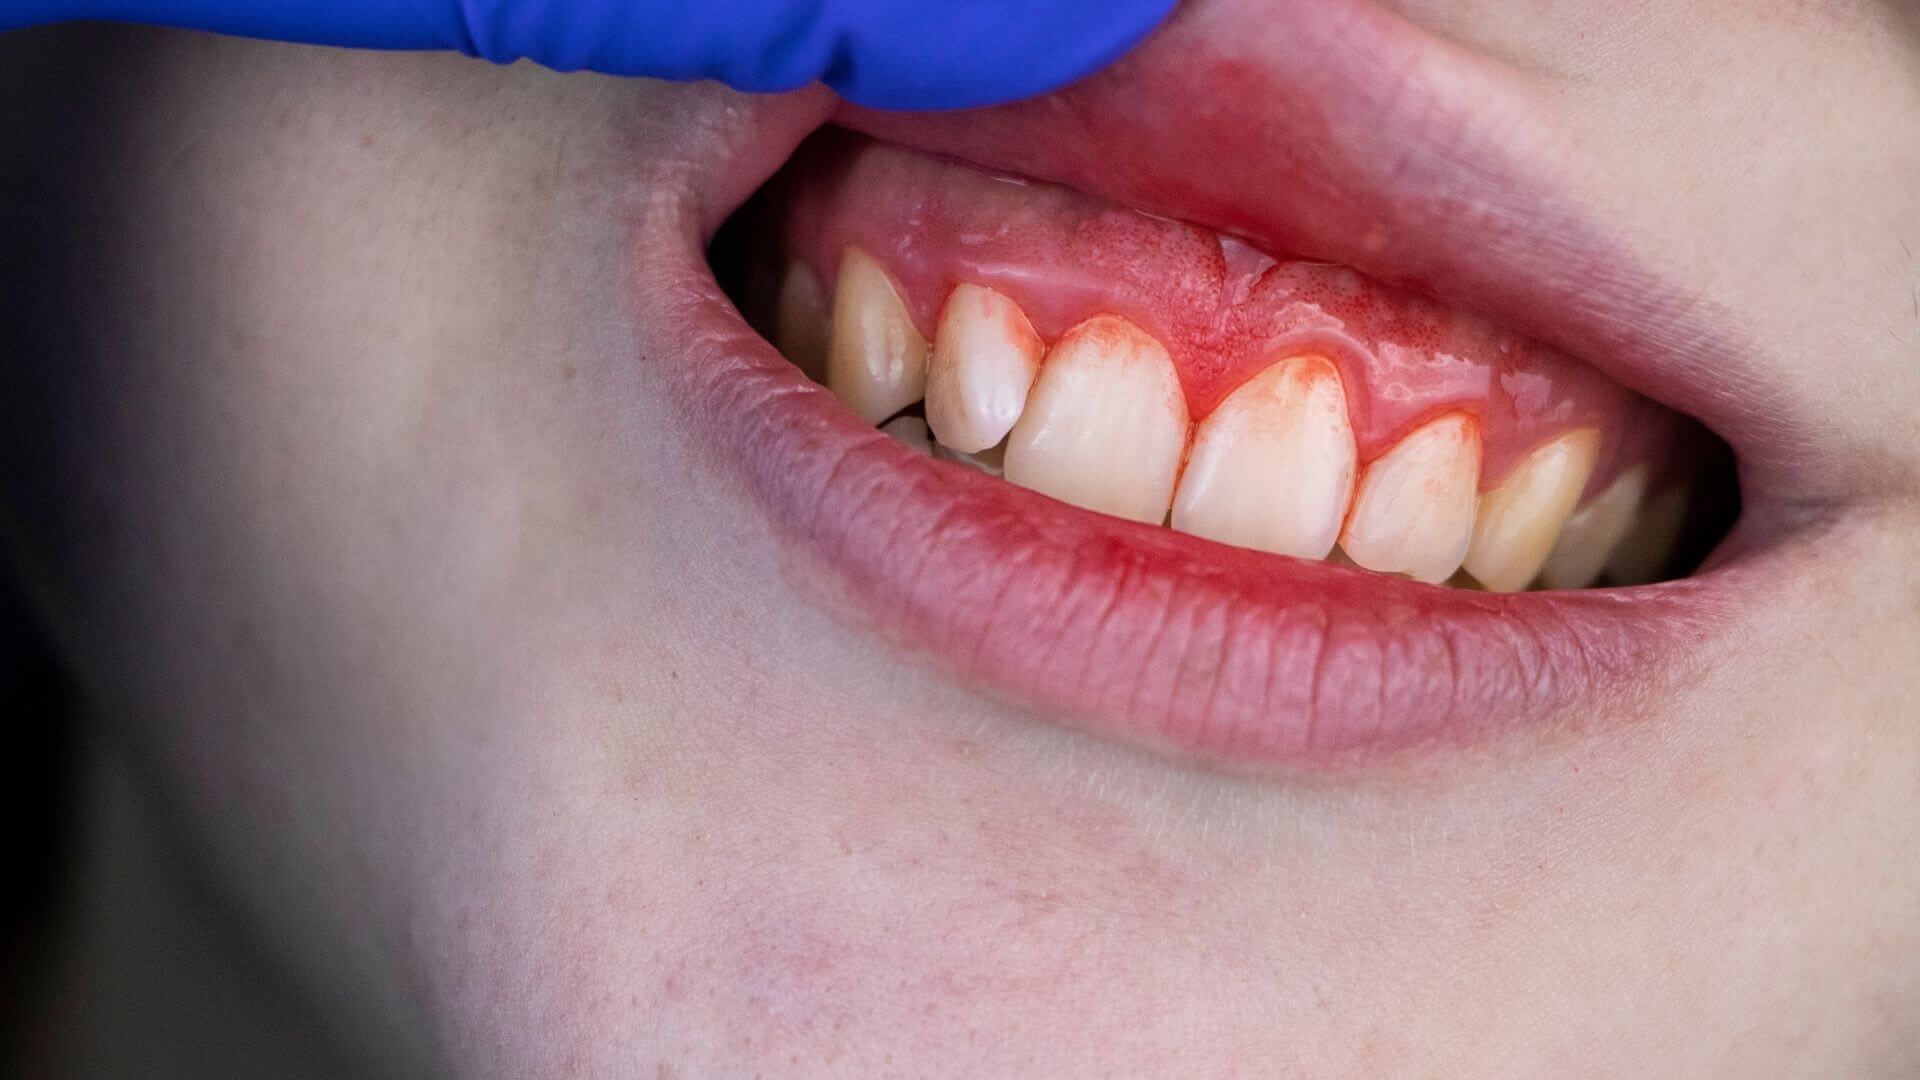 چه بیماری هایی باعث عفونت دندان و لثه می شوند؟